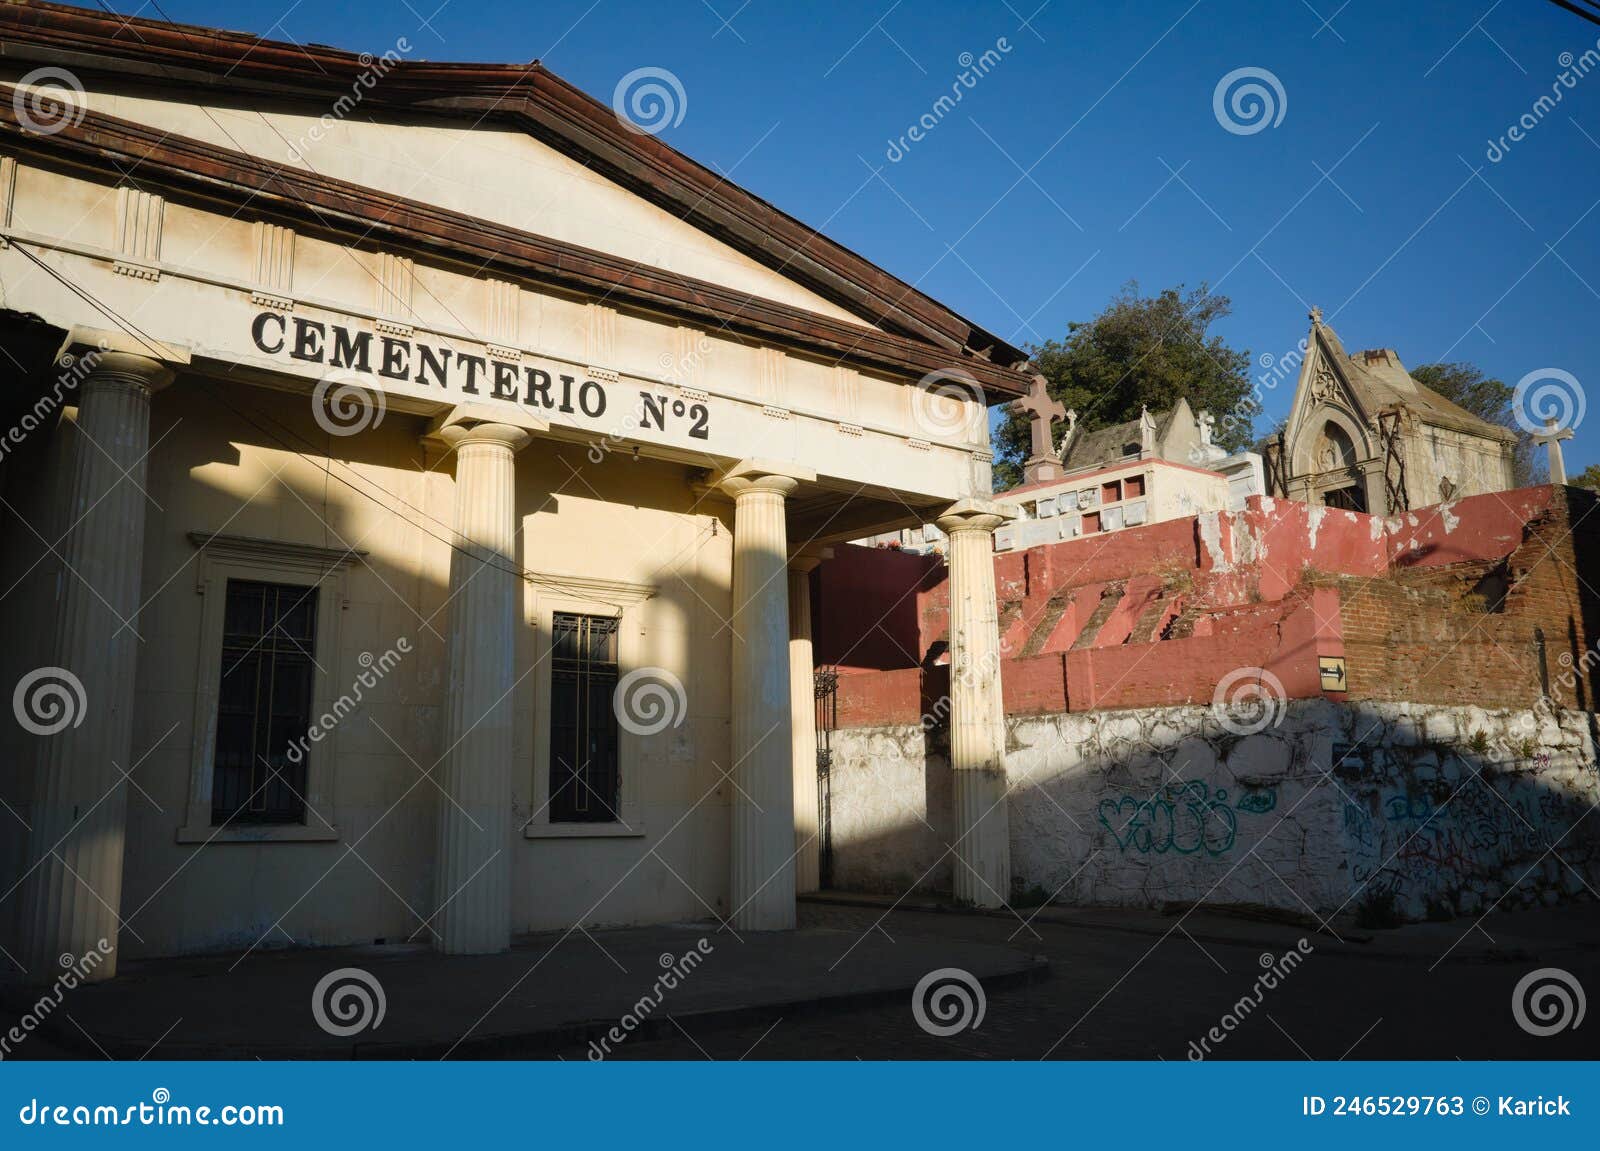 main entrance to old city cemetery cementerio 2 de valparaiso in cerro panteon, valparaiso, chile